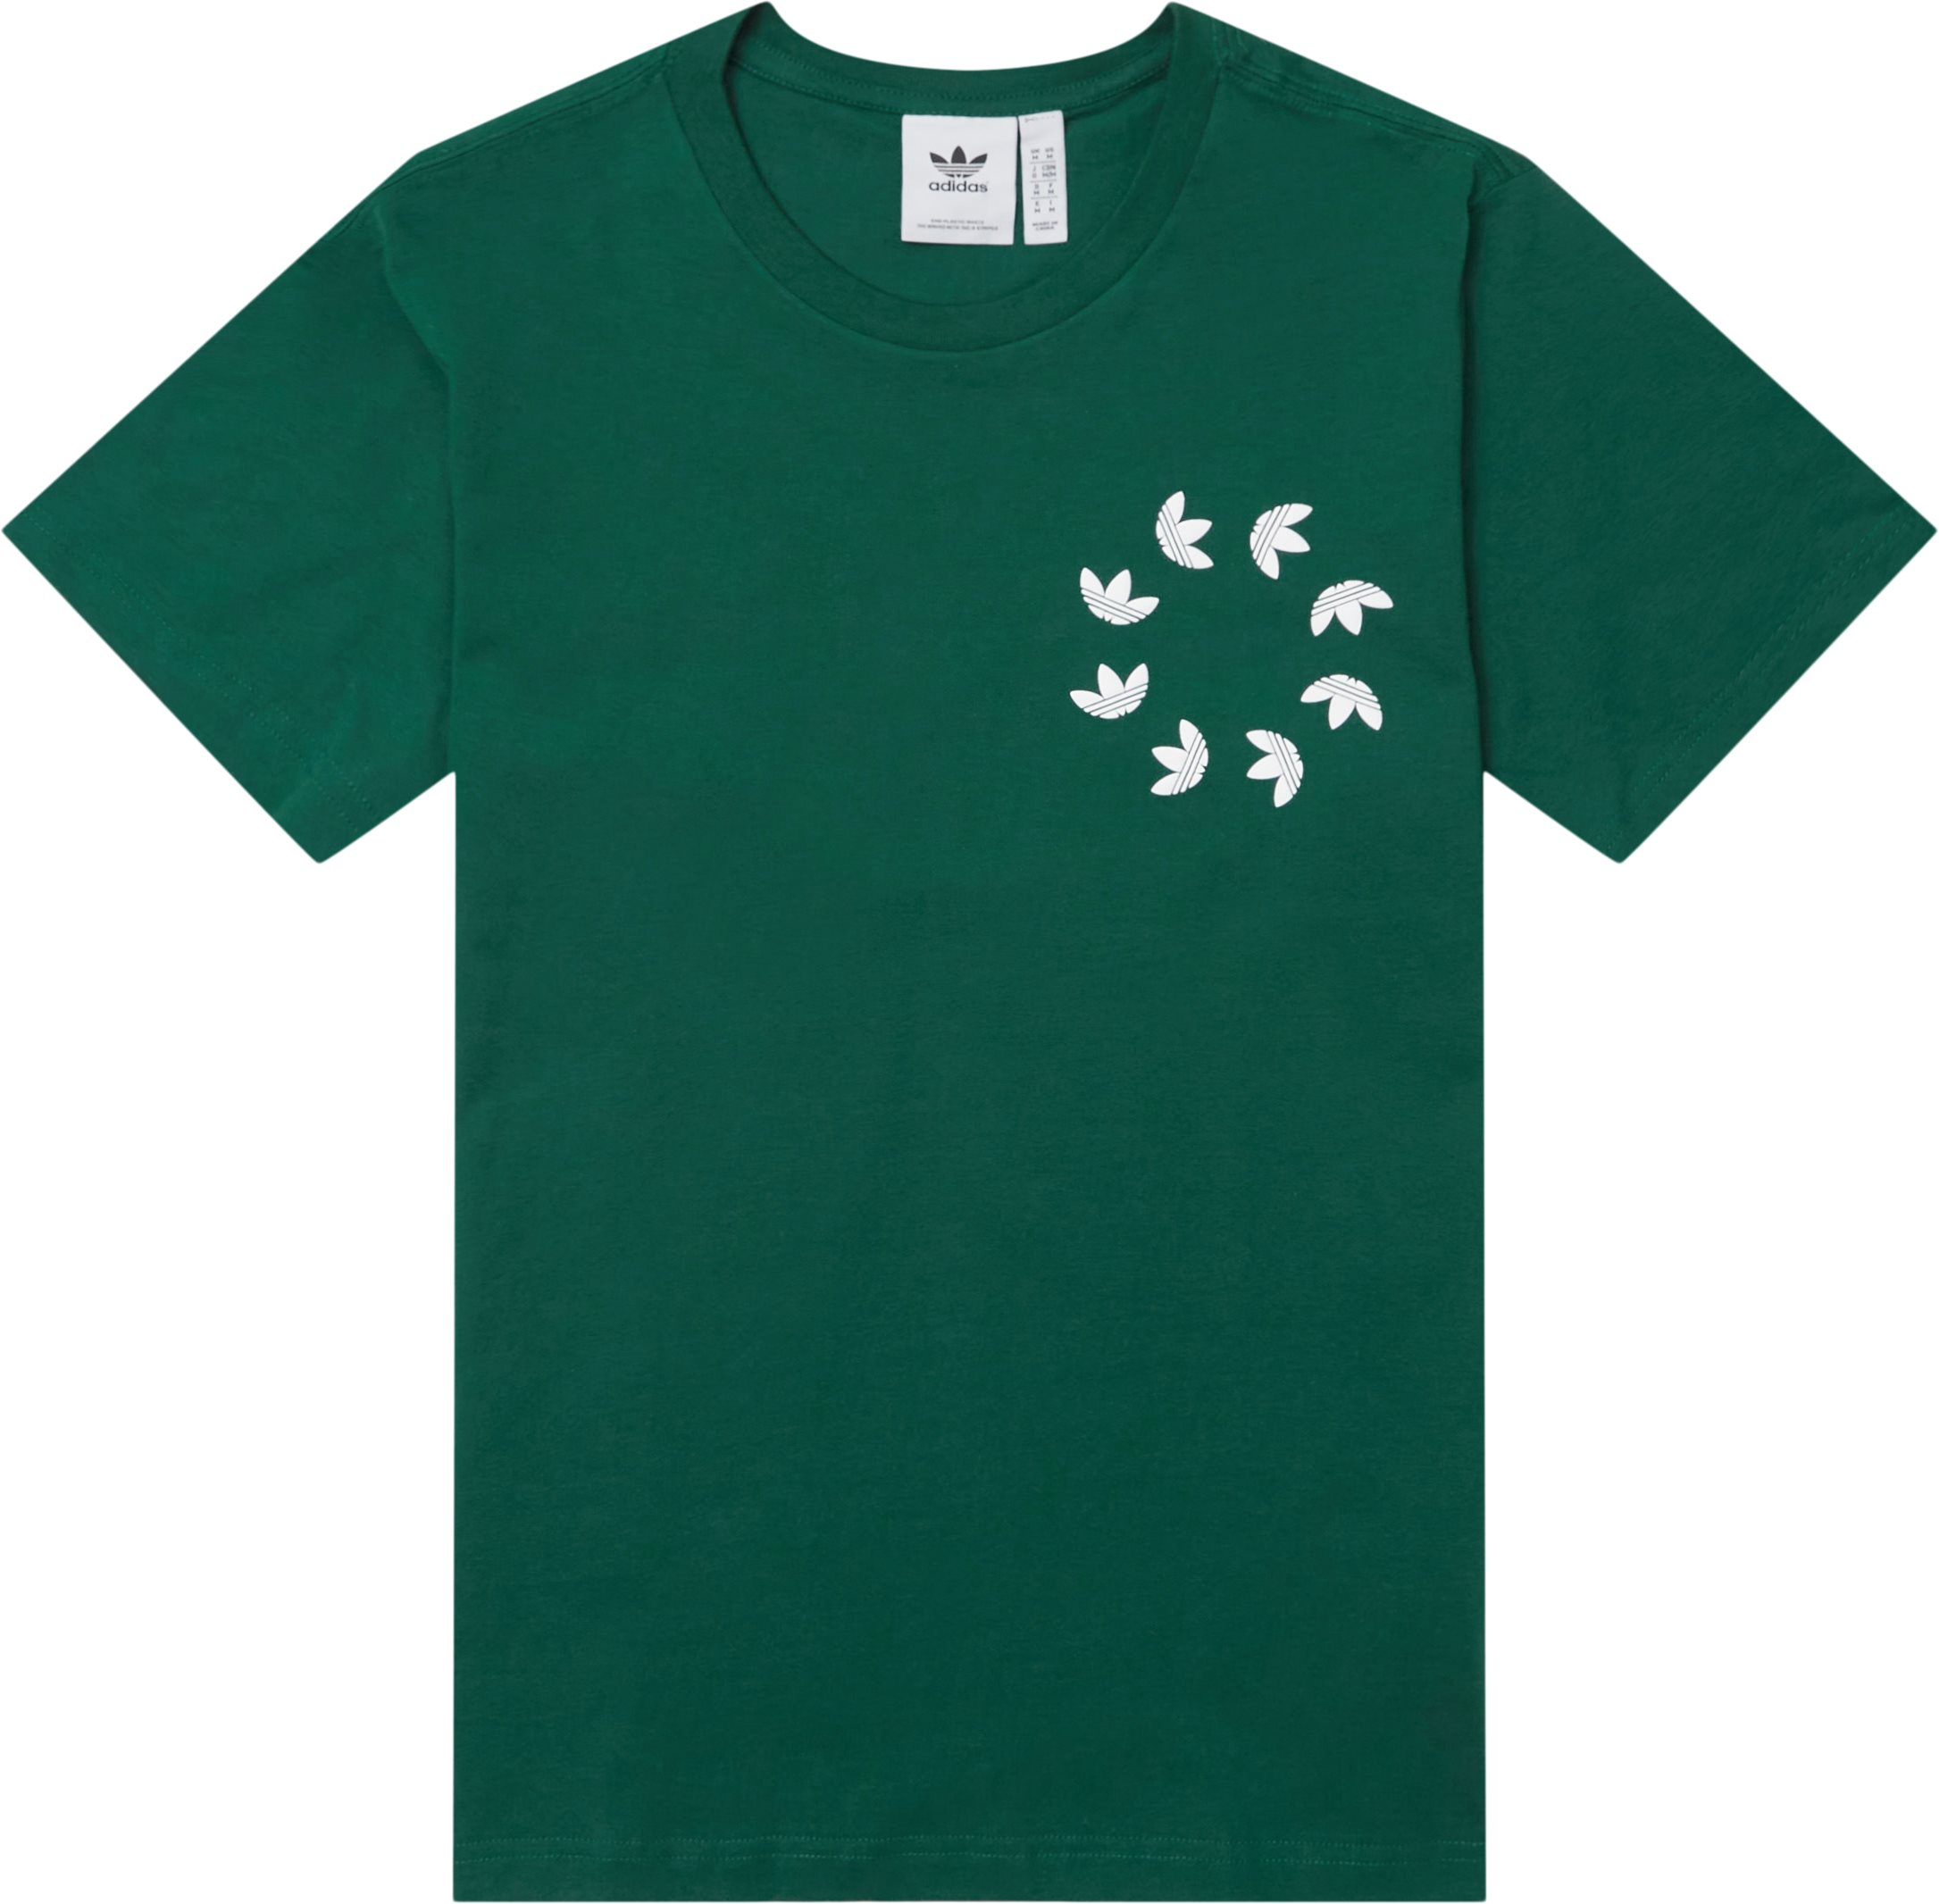 Bld Tee - T-shirts - Regular fit - Grøn